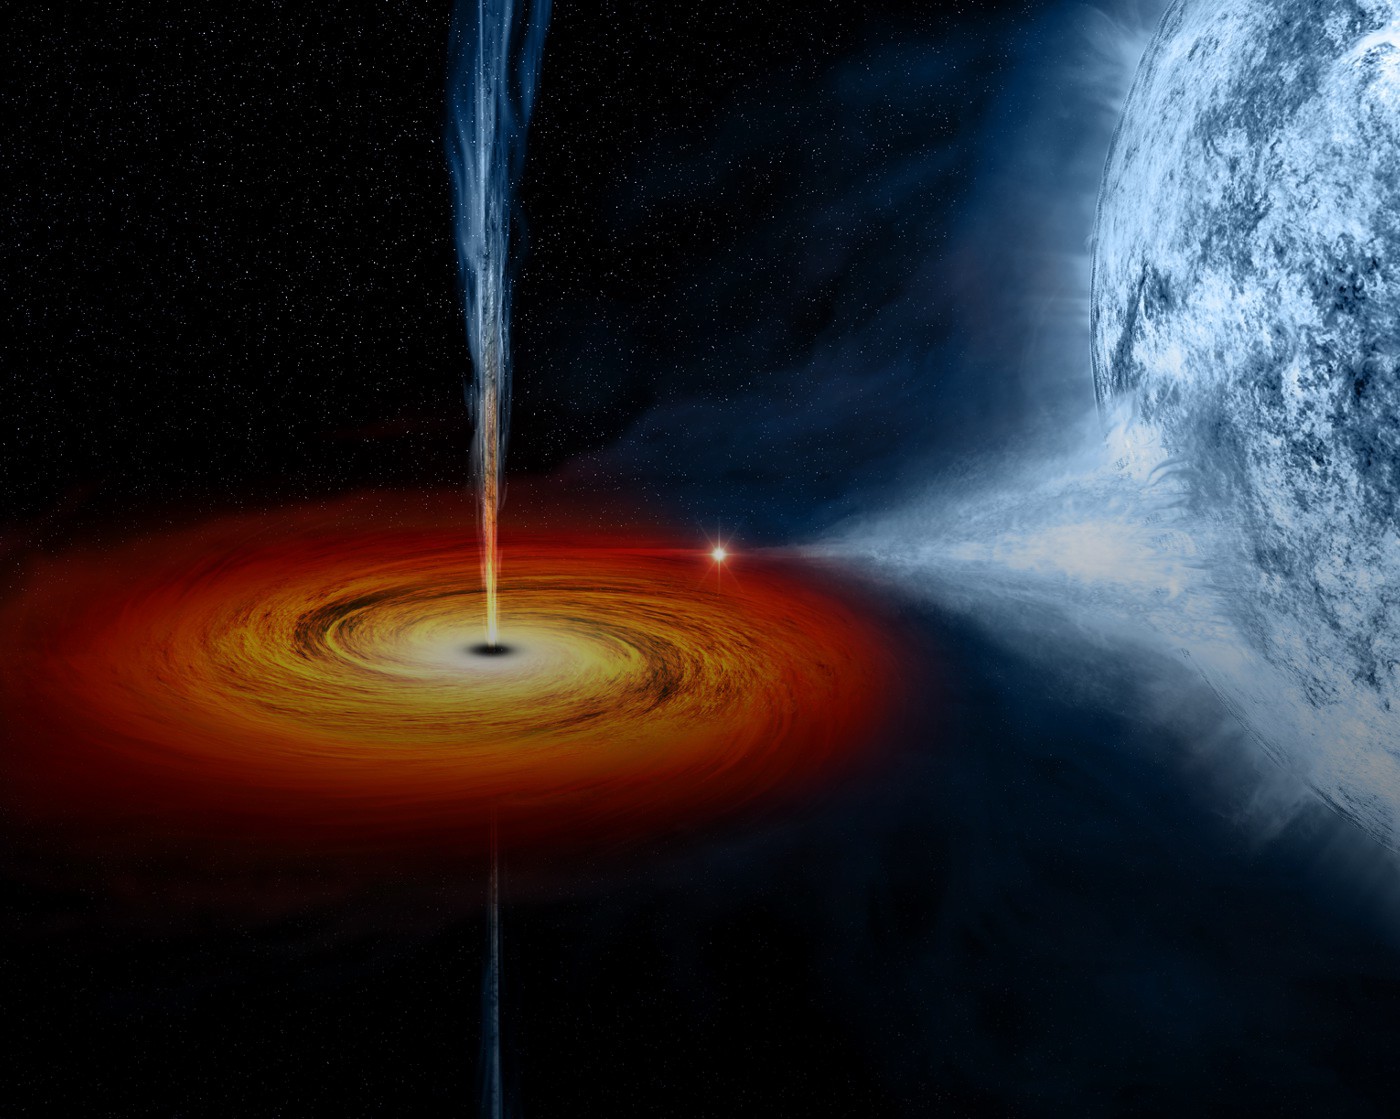 Землю убьет сверхмассивная черная дыра - ученые